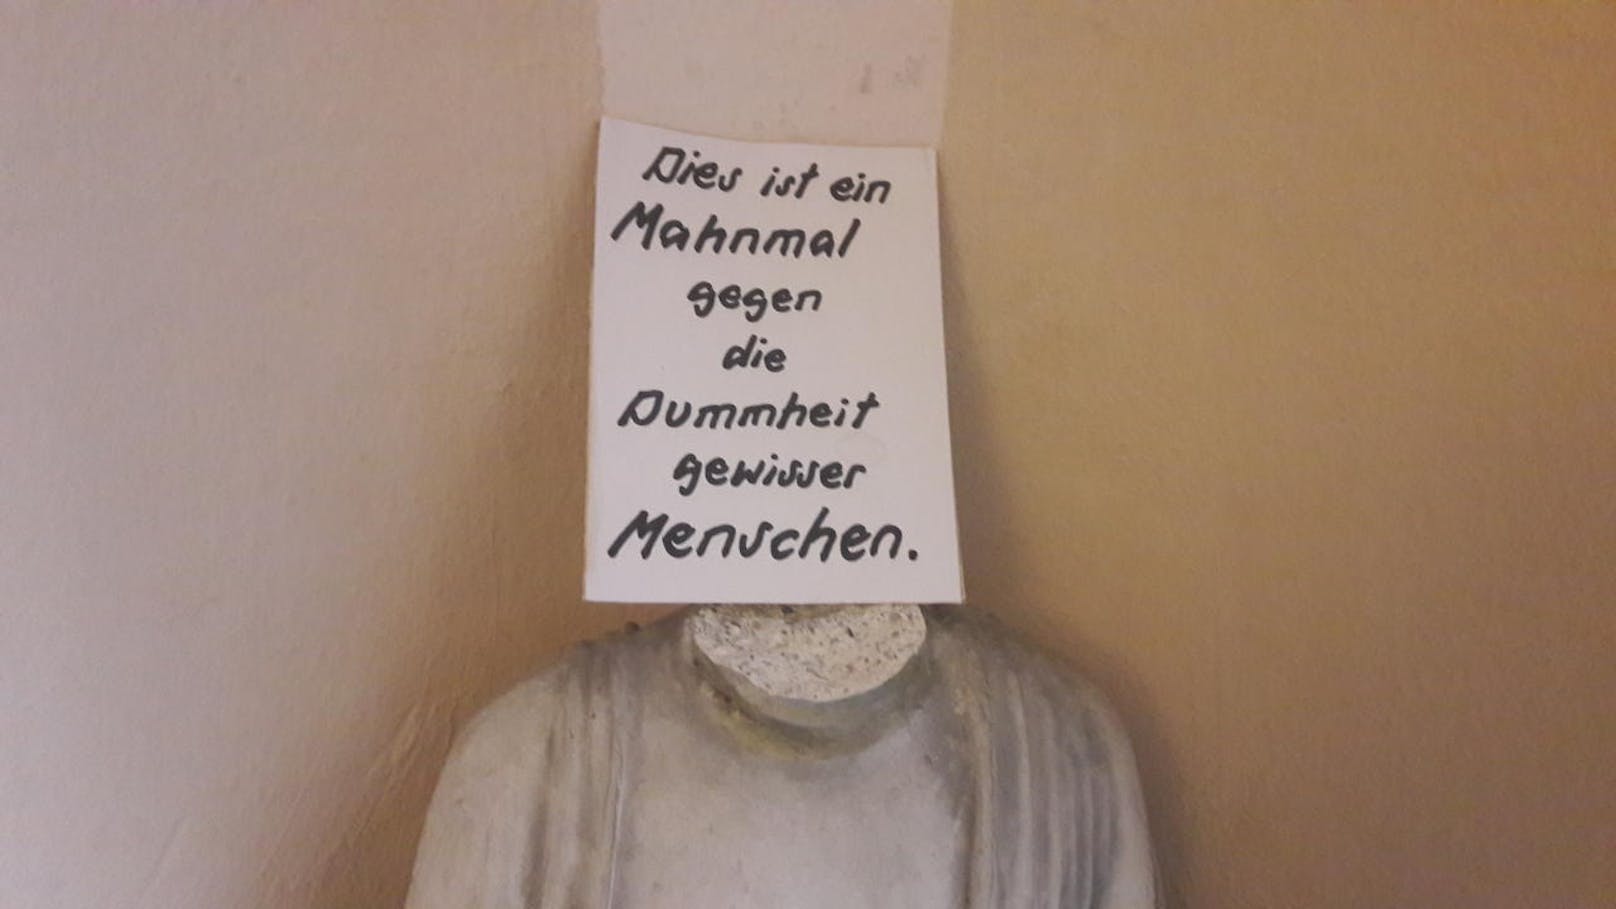 Buddha-Statue in Linz wurde der Kopf abgeschlagen. Jetzt ist es ein "Mahnmal gegen die Dummheit".